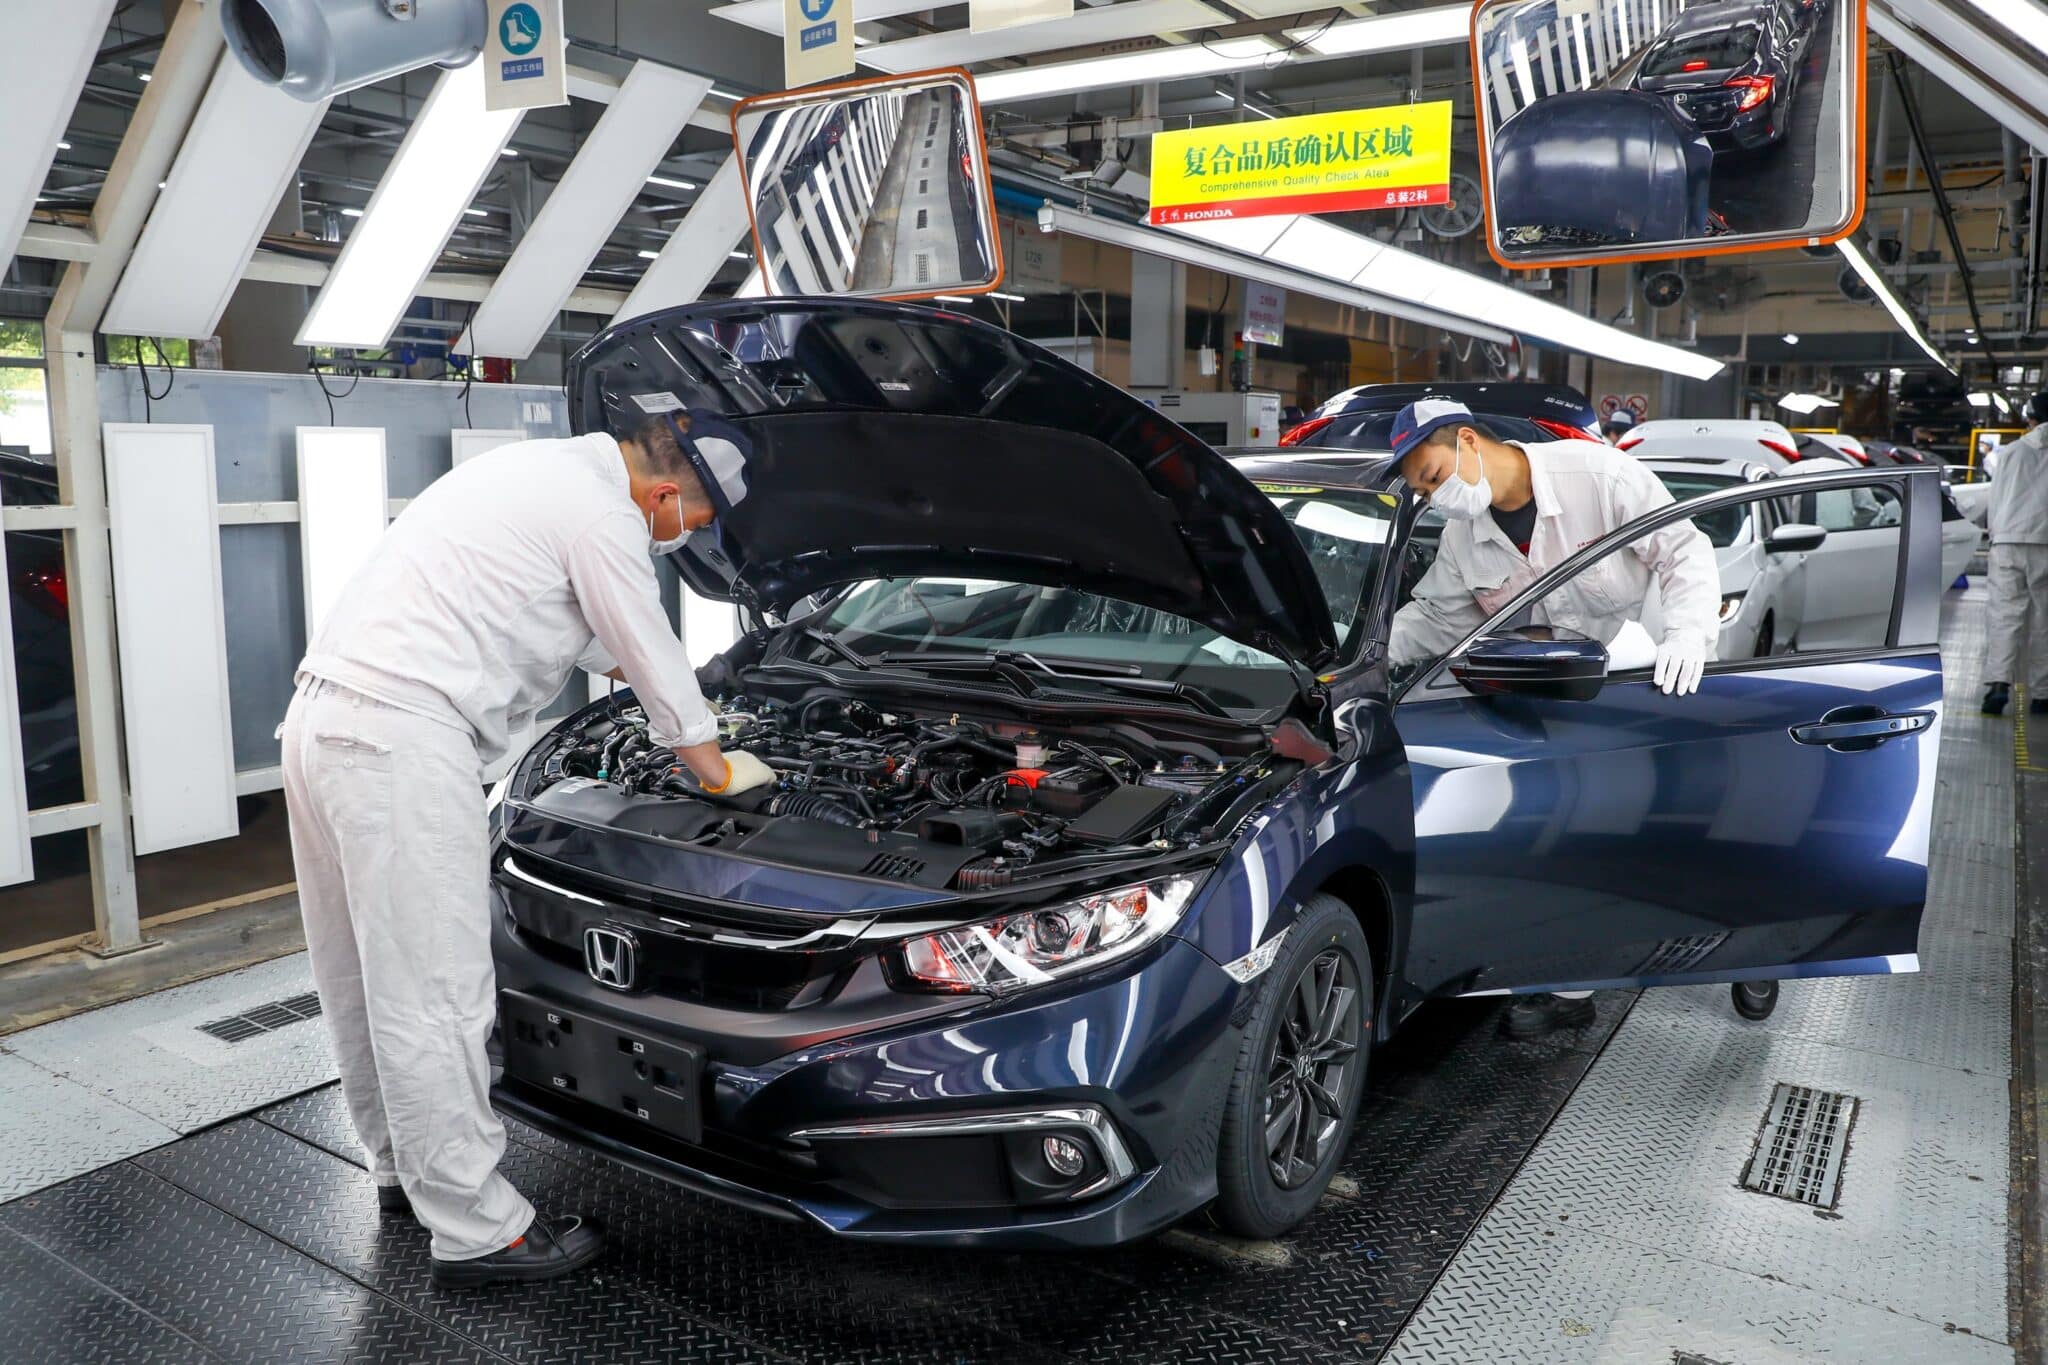 Varios operarios revisan un vehículo Honda en una fábrica en Wuhan